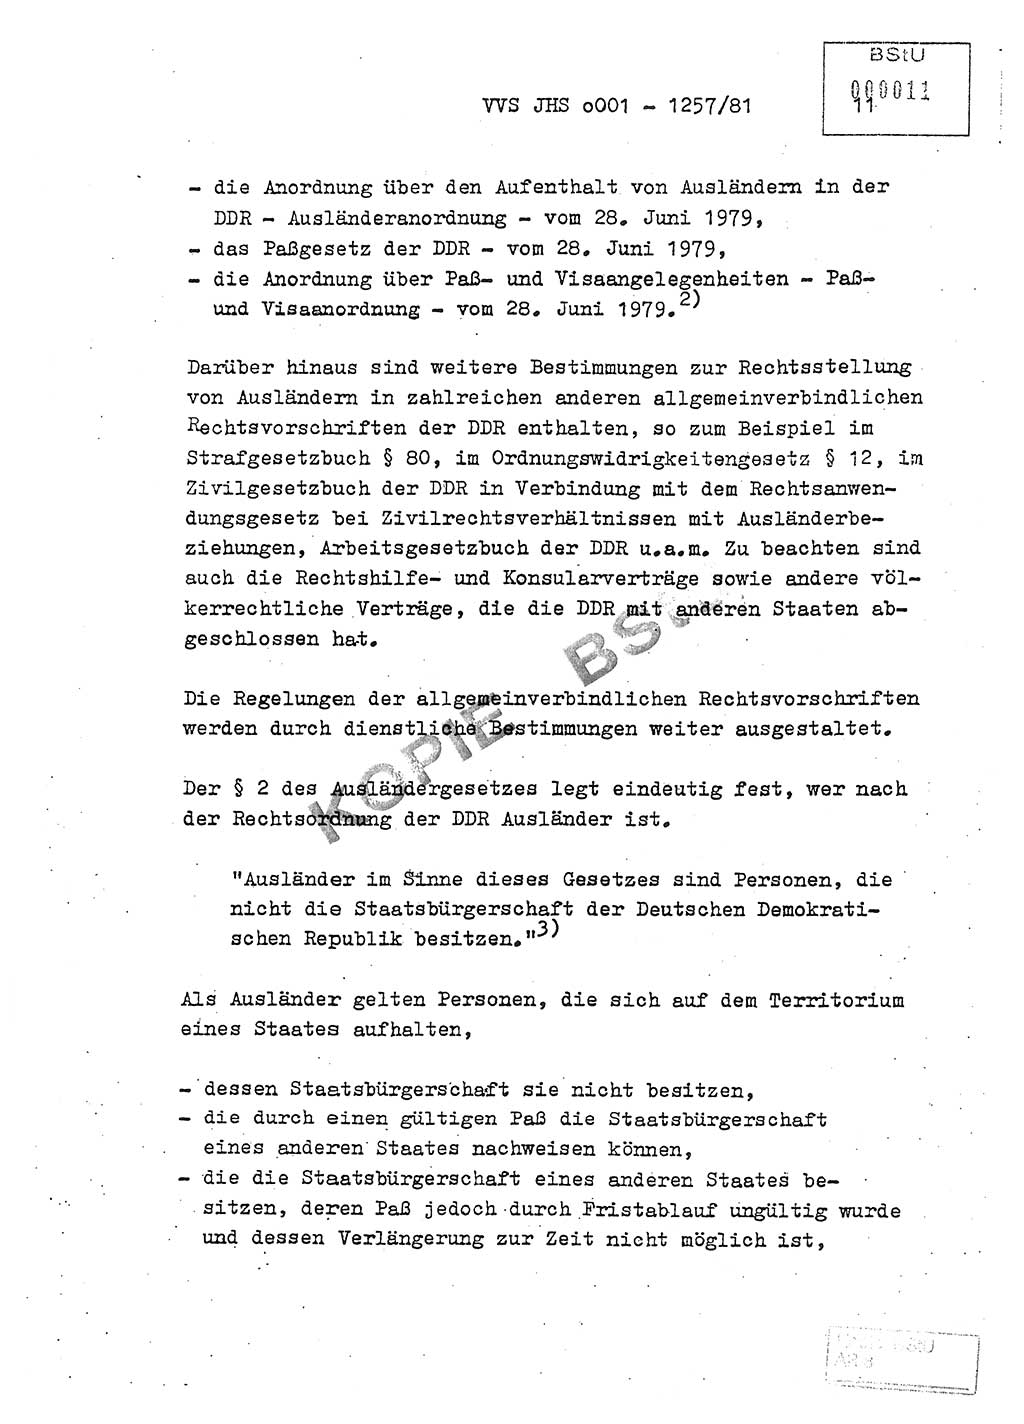 Fachschulabschlußarbeit Unterleutnant Dieter Möller (BV Rst. Abt. ⅩⅣ), Ministerium für Staatssicherheit (MfS) [Deutsche Demokratische Republik (DDR)], Juristische Hochschule (JHS), Vertrauliche Verschlußsache (VVS) o001-1257/81, Potsdam 1982, Seite 11 (FS-Abschl.-Arb. MfS DDR JHS VVS o001-1257/81 1982, S. 11)